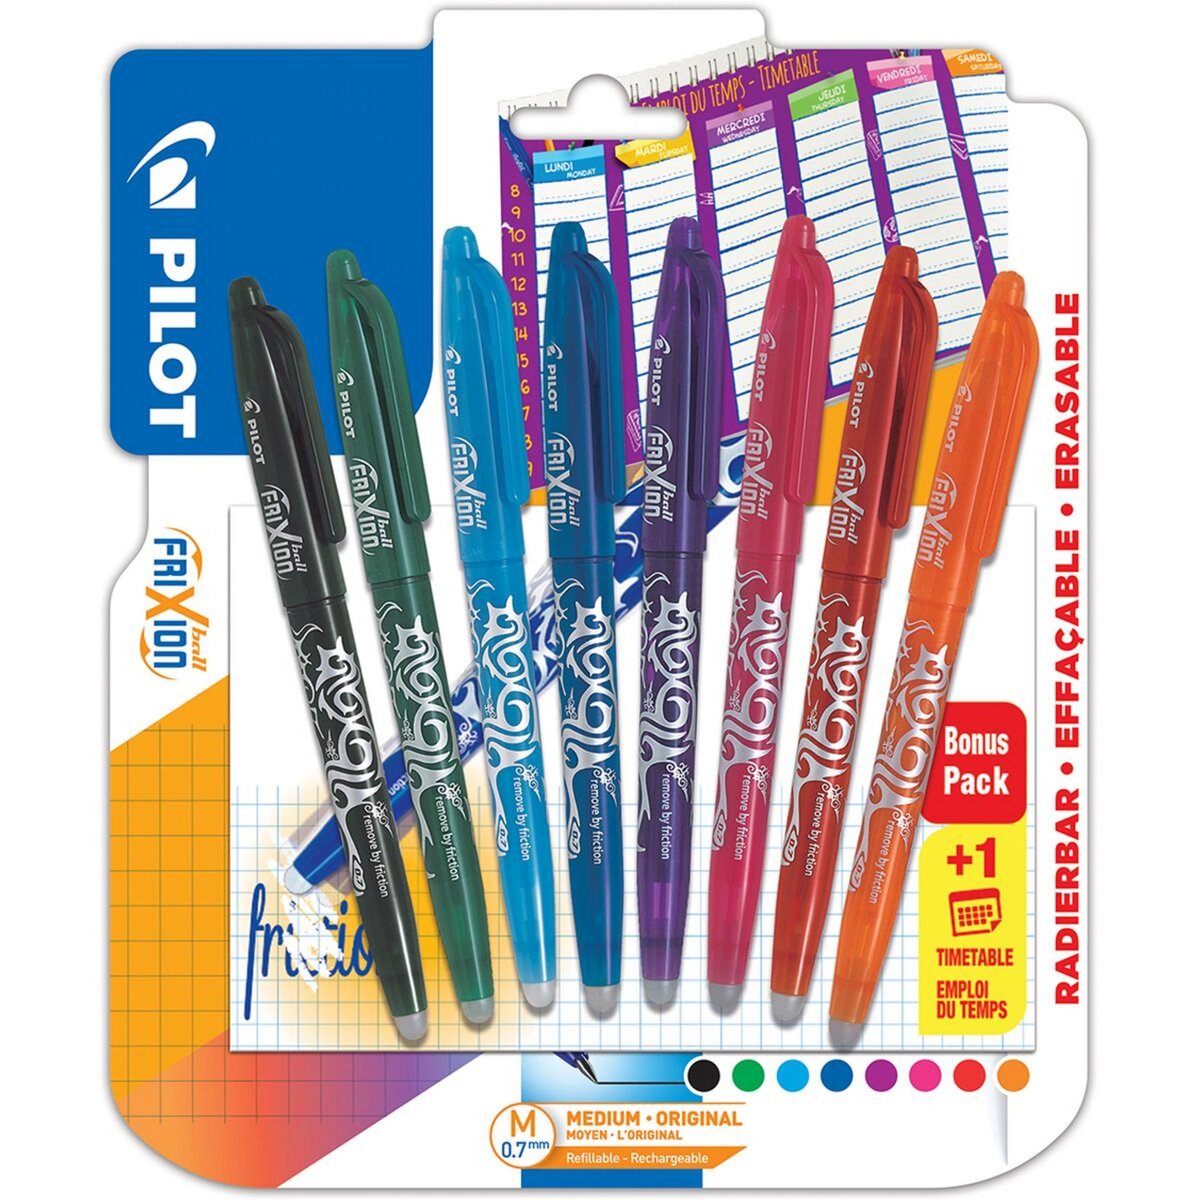 PILOT Lot de 8 stylos effaçables pointe moyenne noir/vert/bleu clair/bleu /violet/rose/rouge/orange FriXion Ball + 1 emploi du temps pas cher 